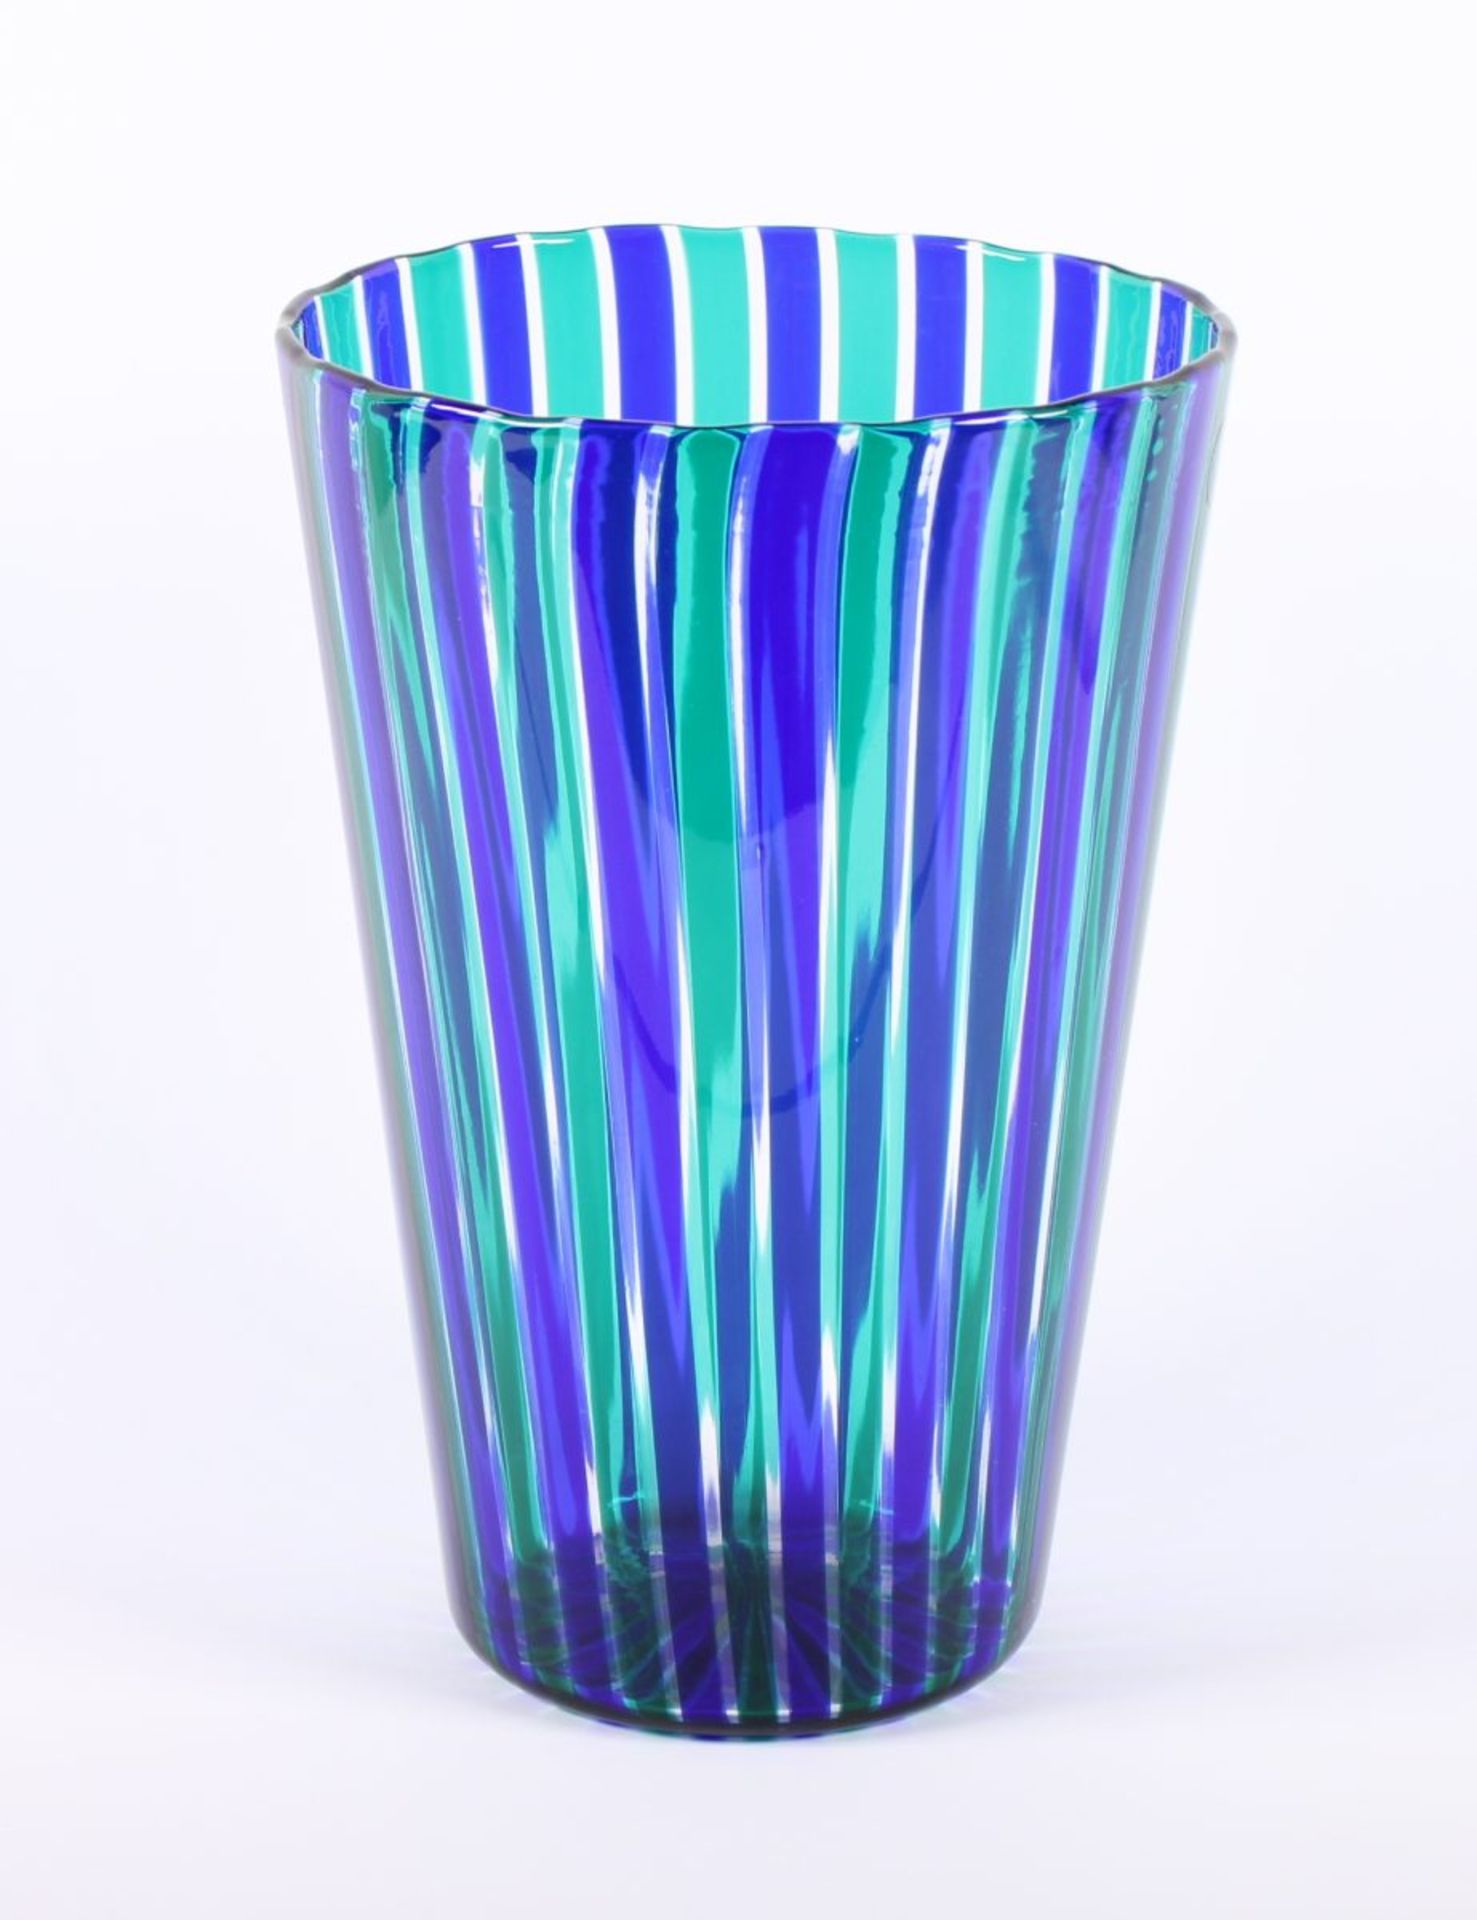 VASE "A FASCE VERTICALI", farbloses Glas, alternierend grüne und blaue Streifeneinschmelzungen,